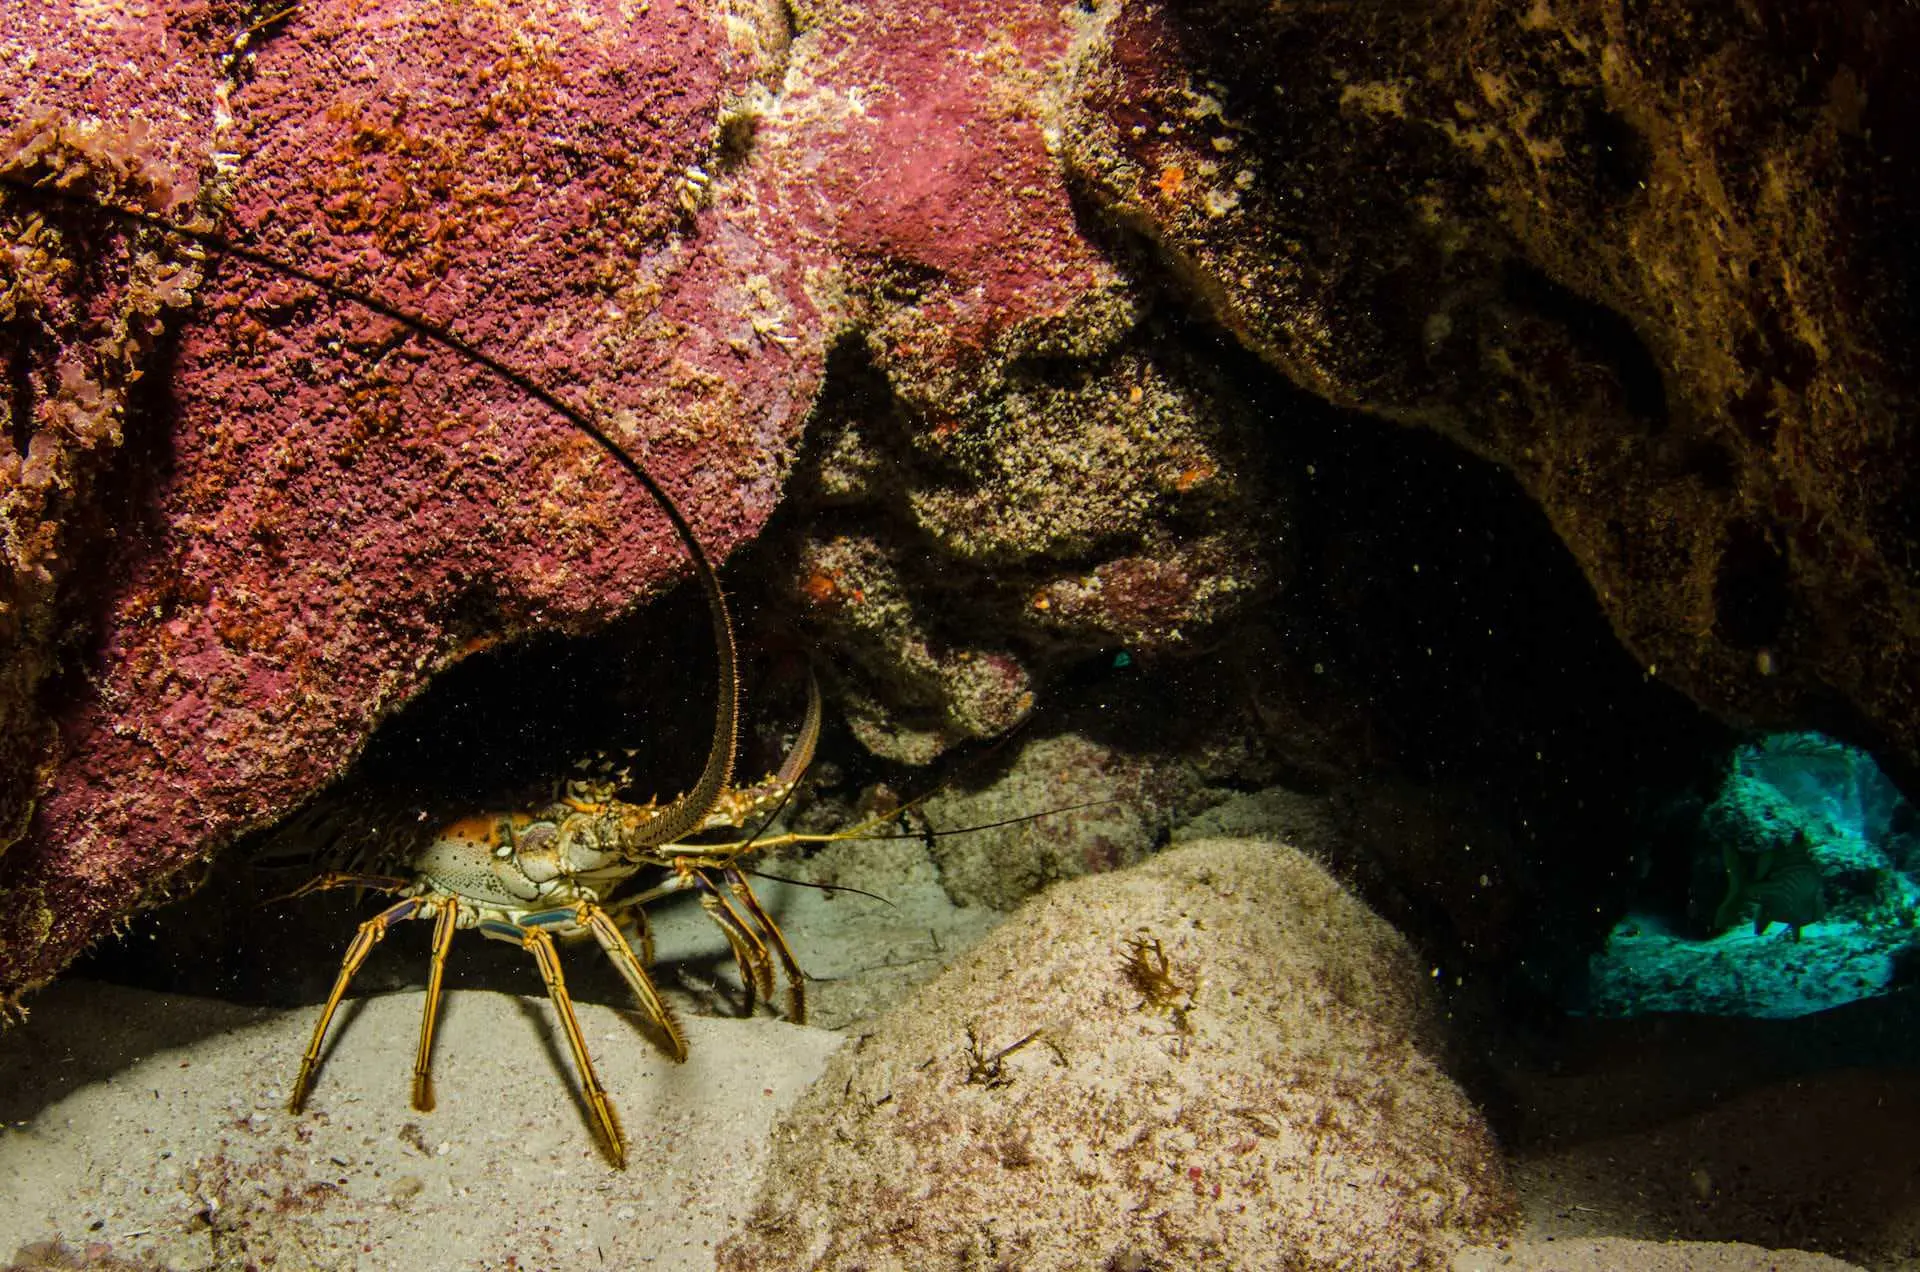 lobster hiding under rock